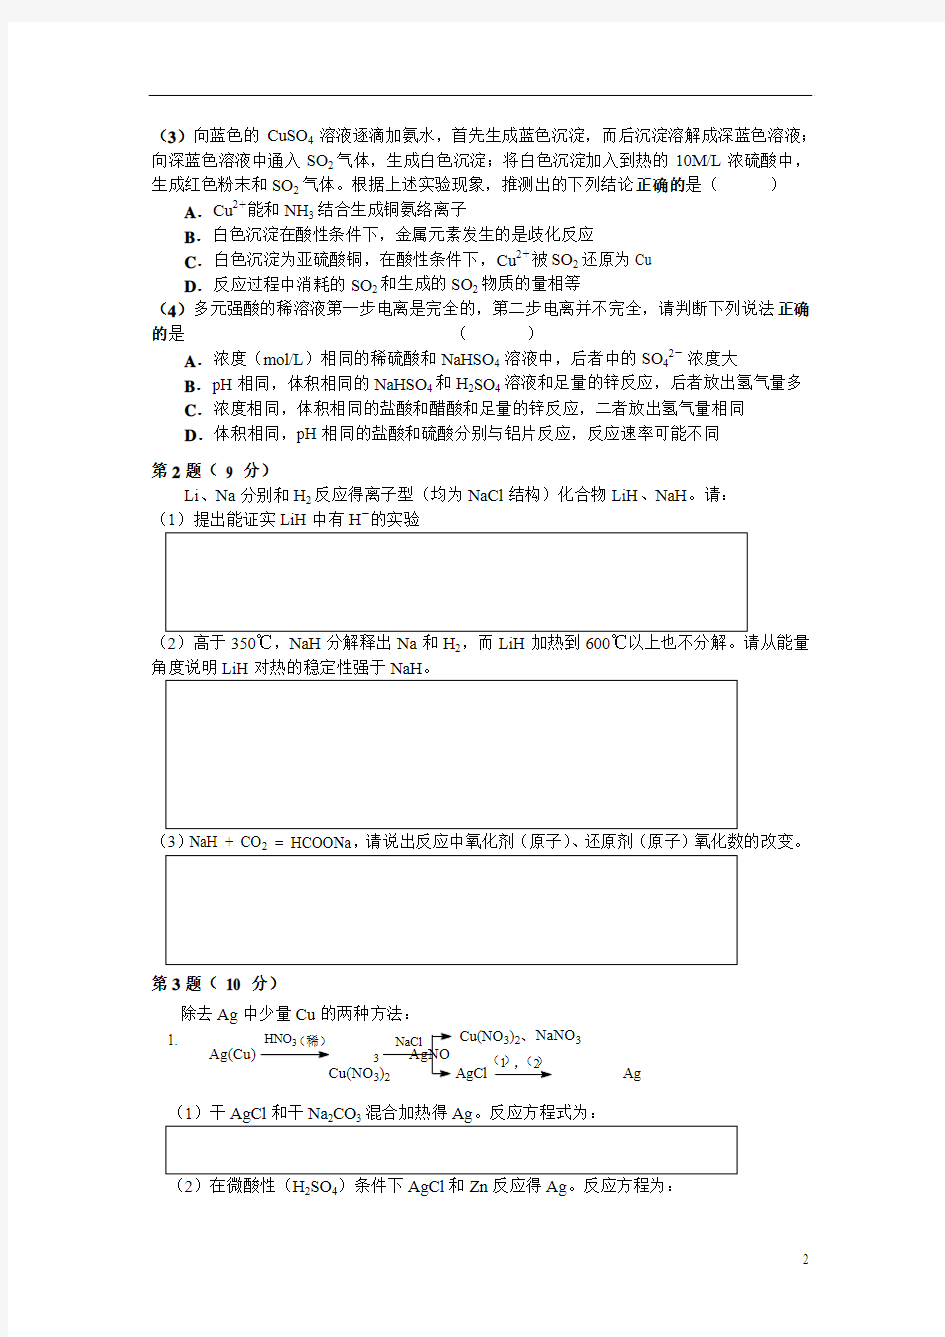 2012年北京市高中学生化学竞赛试卷(高中二年级)及答案